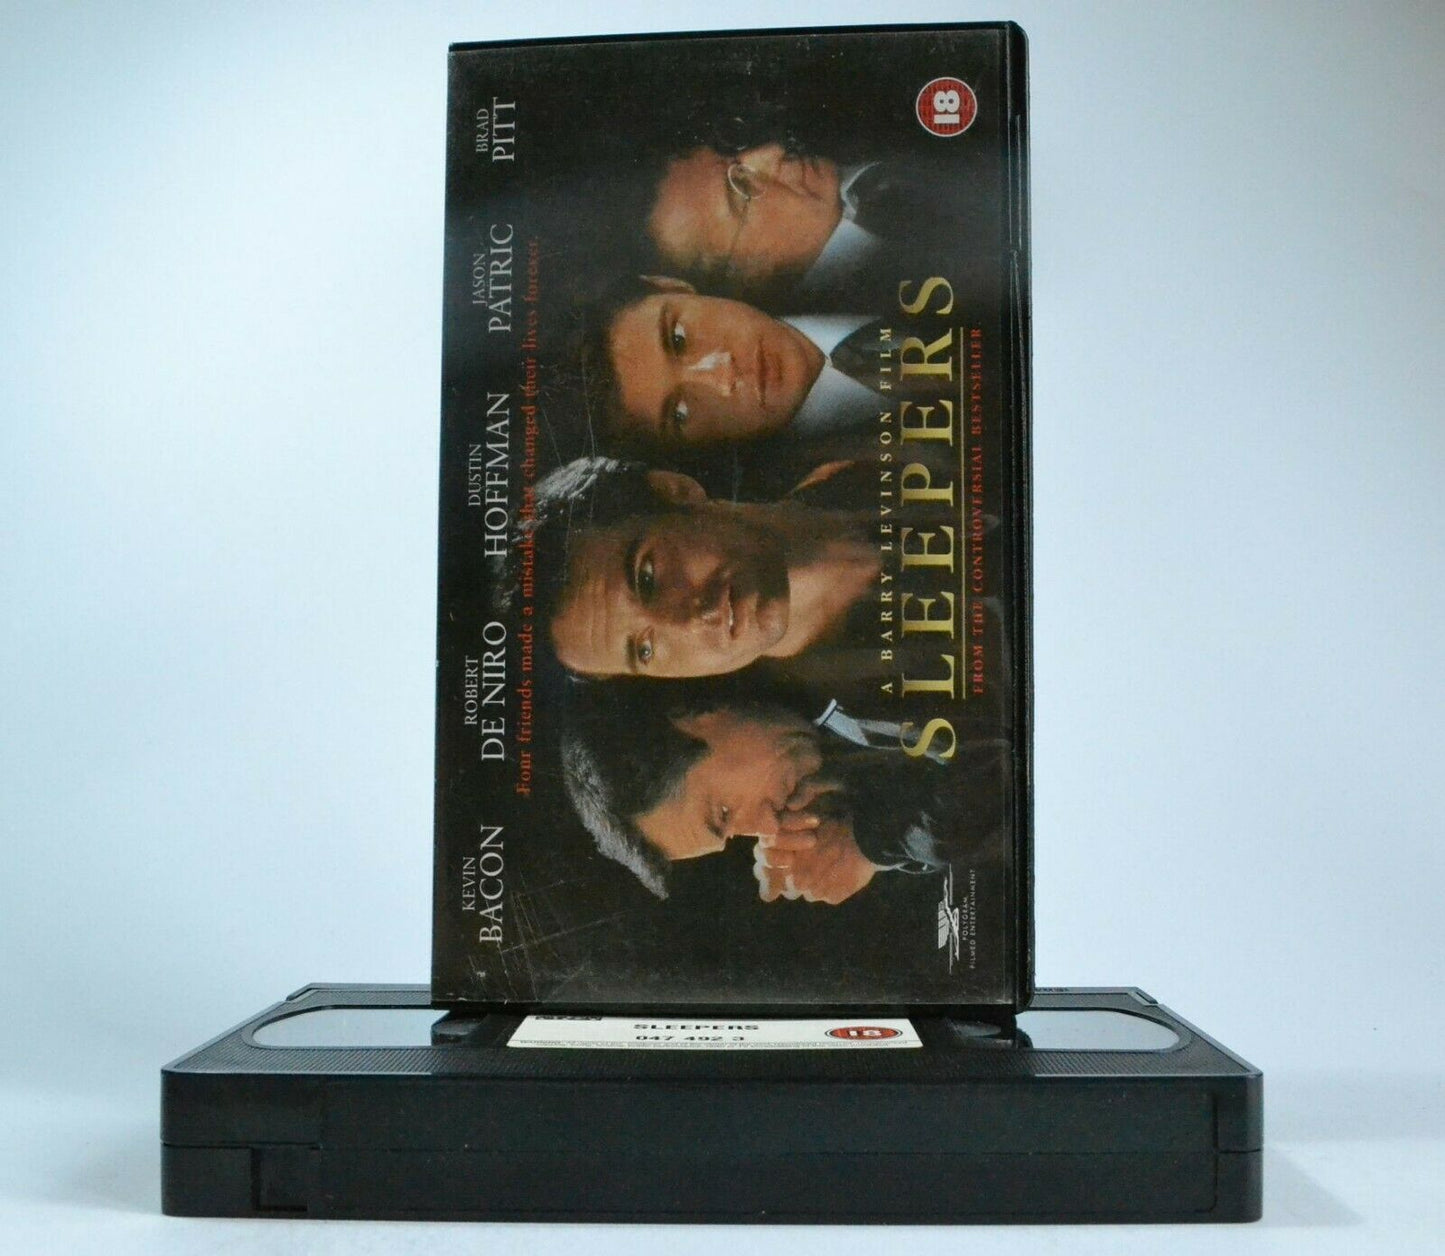 Sleepers (1996): A Barry Levinson Film - Court Drama - Robert De Niro - Pal VHS-